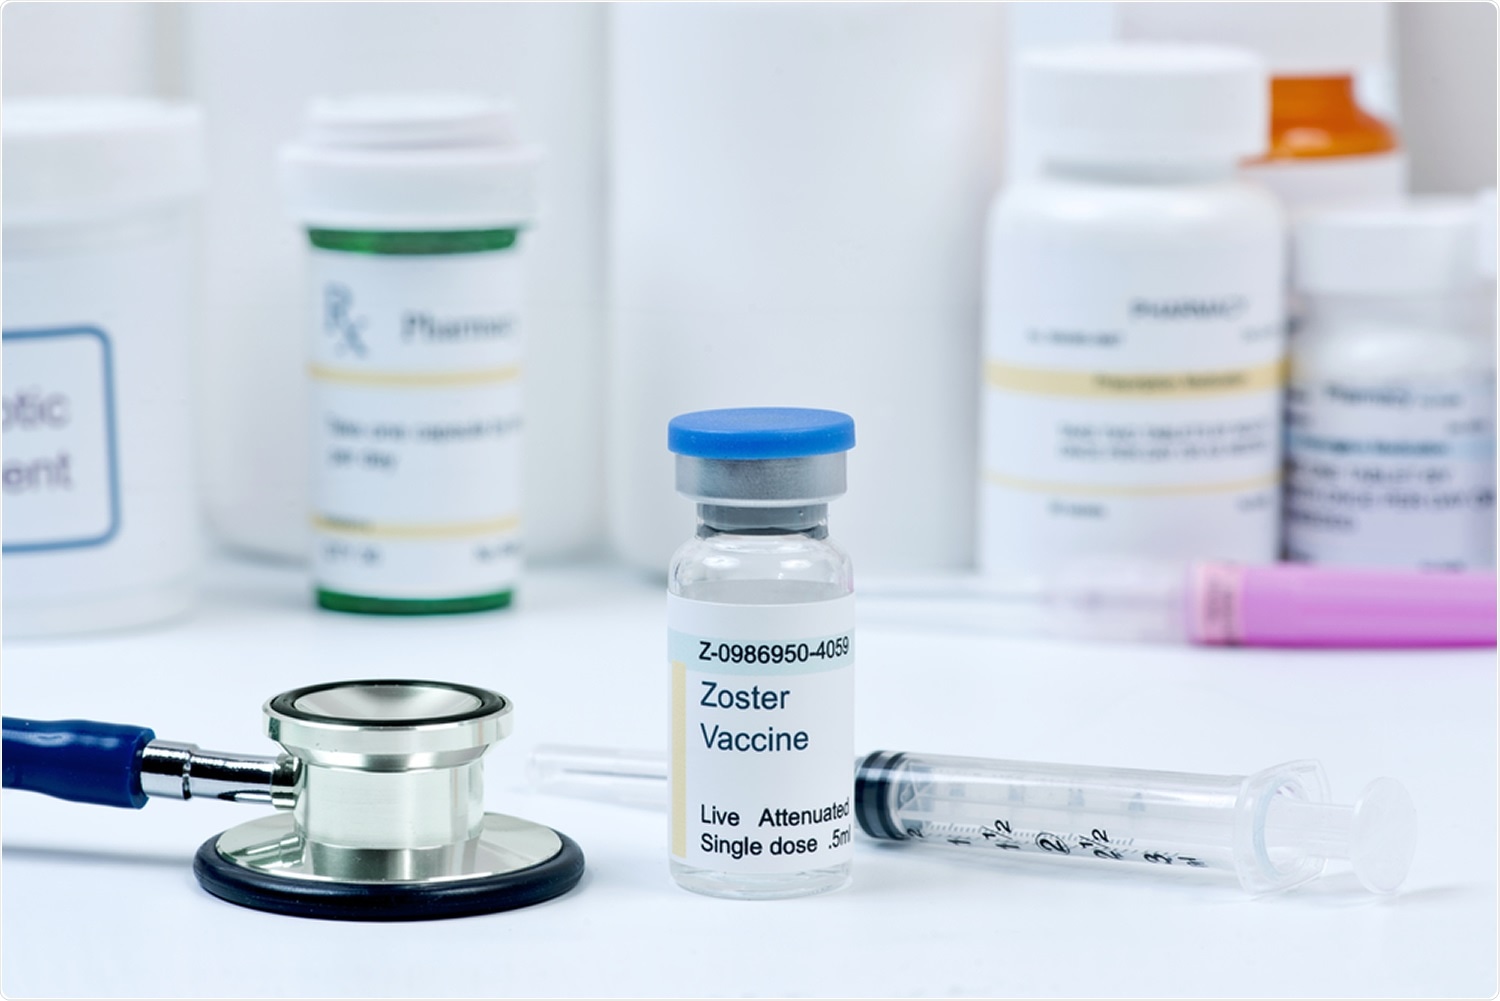 Studio: Vaccino adjuvanted recombinante di zoster e rischio diminuito di diagnosi COVID-19 e di ospedalizzazione in adulti più anziani. Credito di immagine: MedstockPhotos/Shutterstock